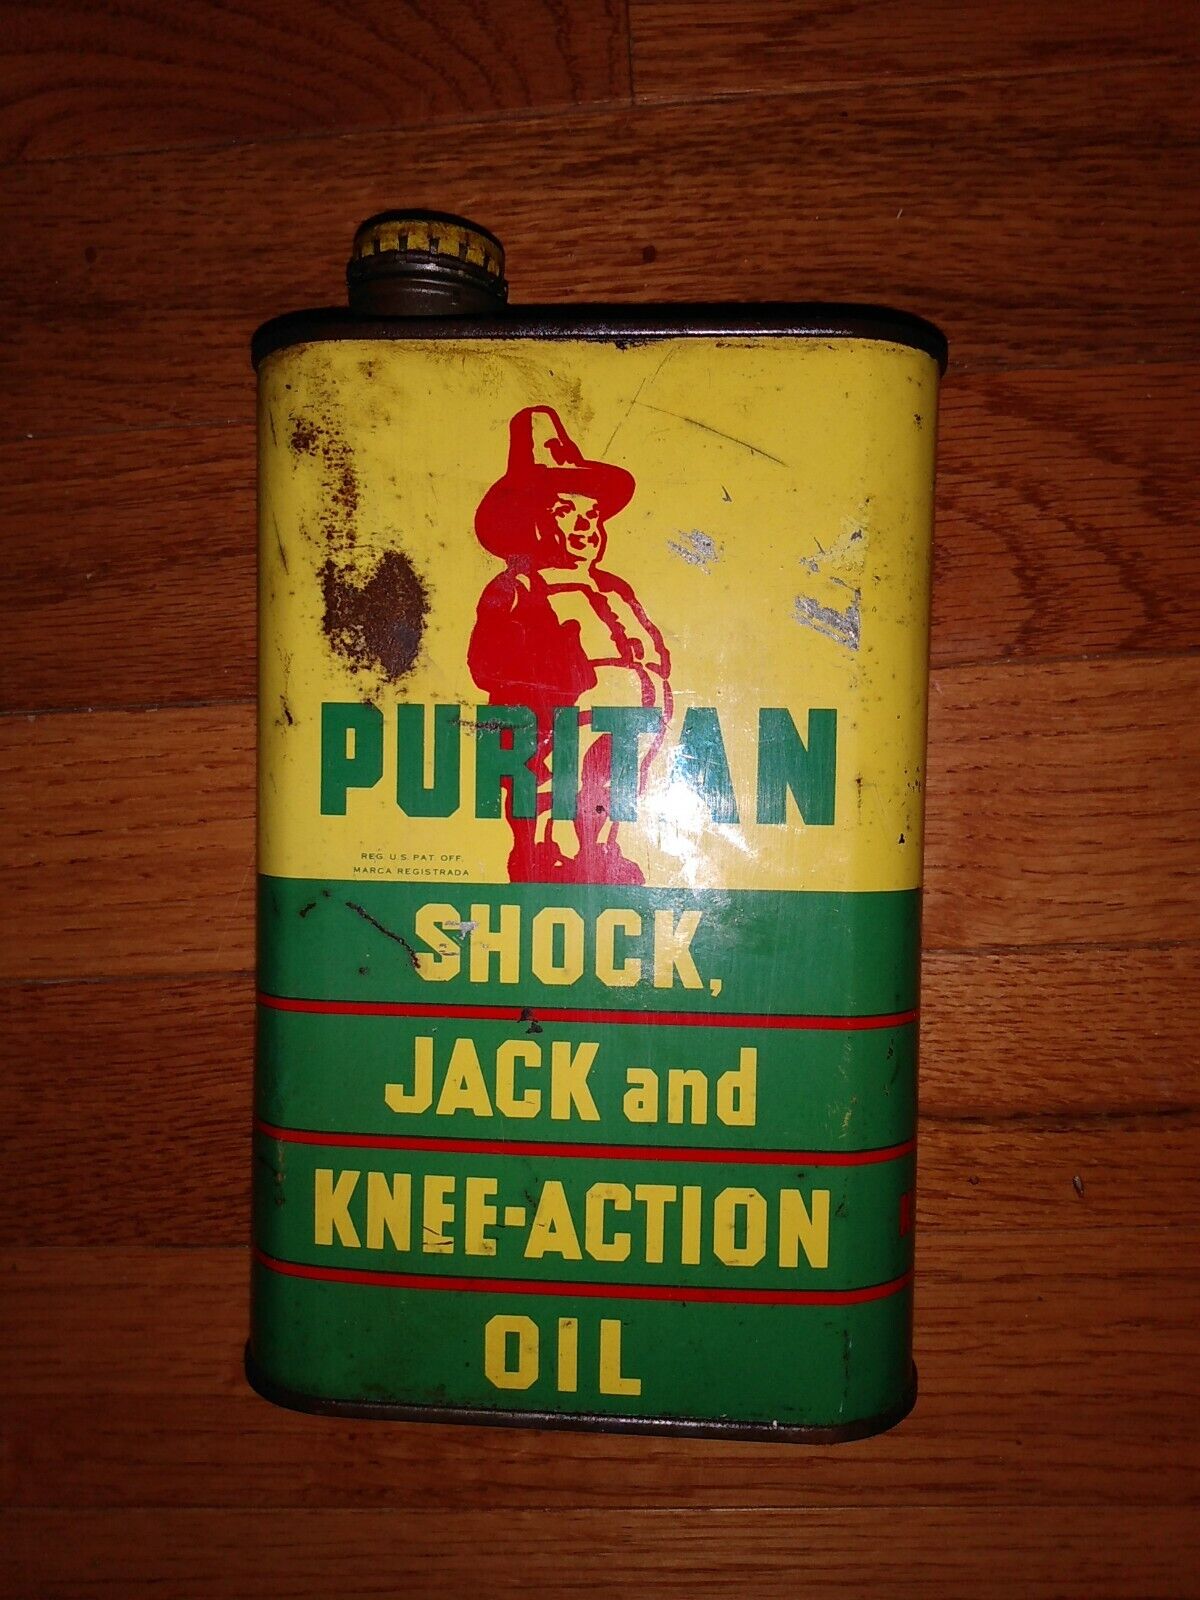 Puritan shock and jack oil 32 oz tin quart can man cave classic car display item